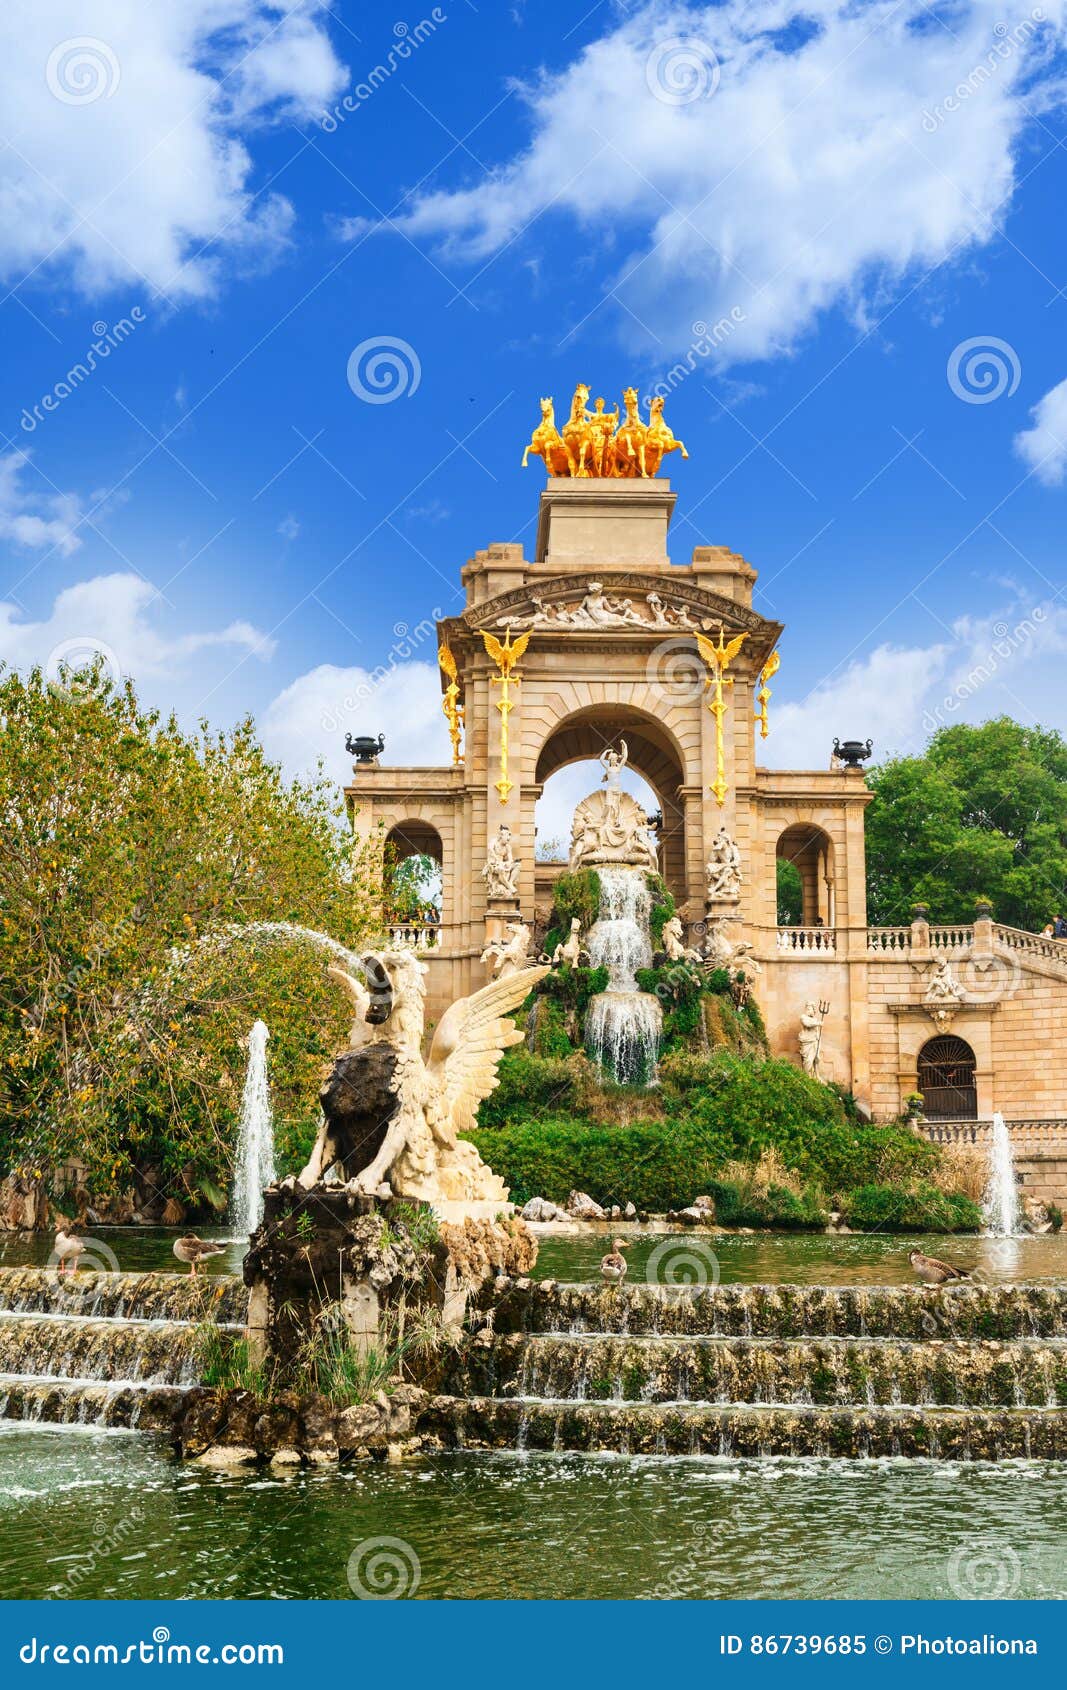 Fountain at Parc De La Ciutadella Citadel Park, Barcelona Stock Image ...